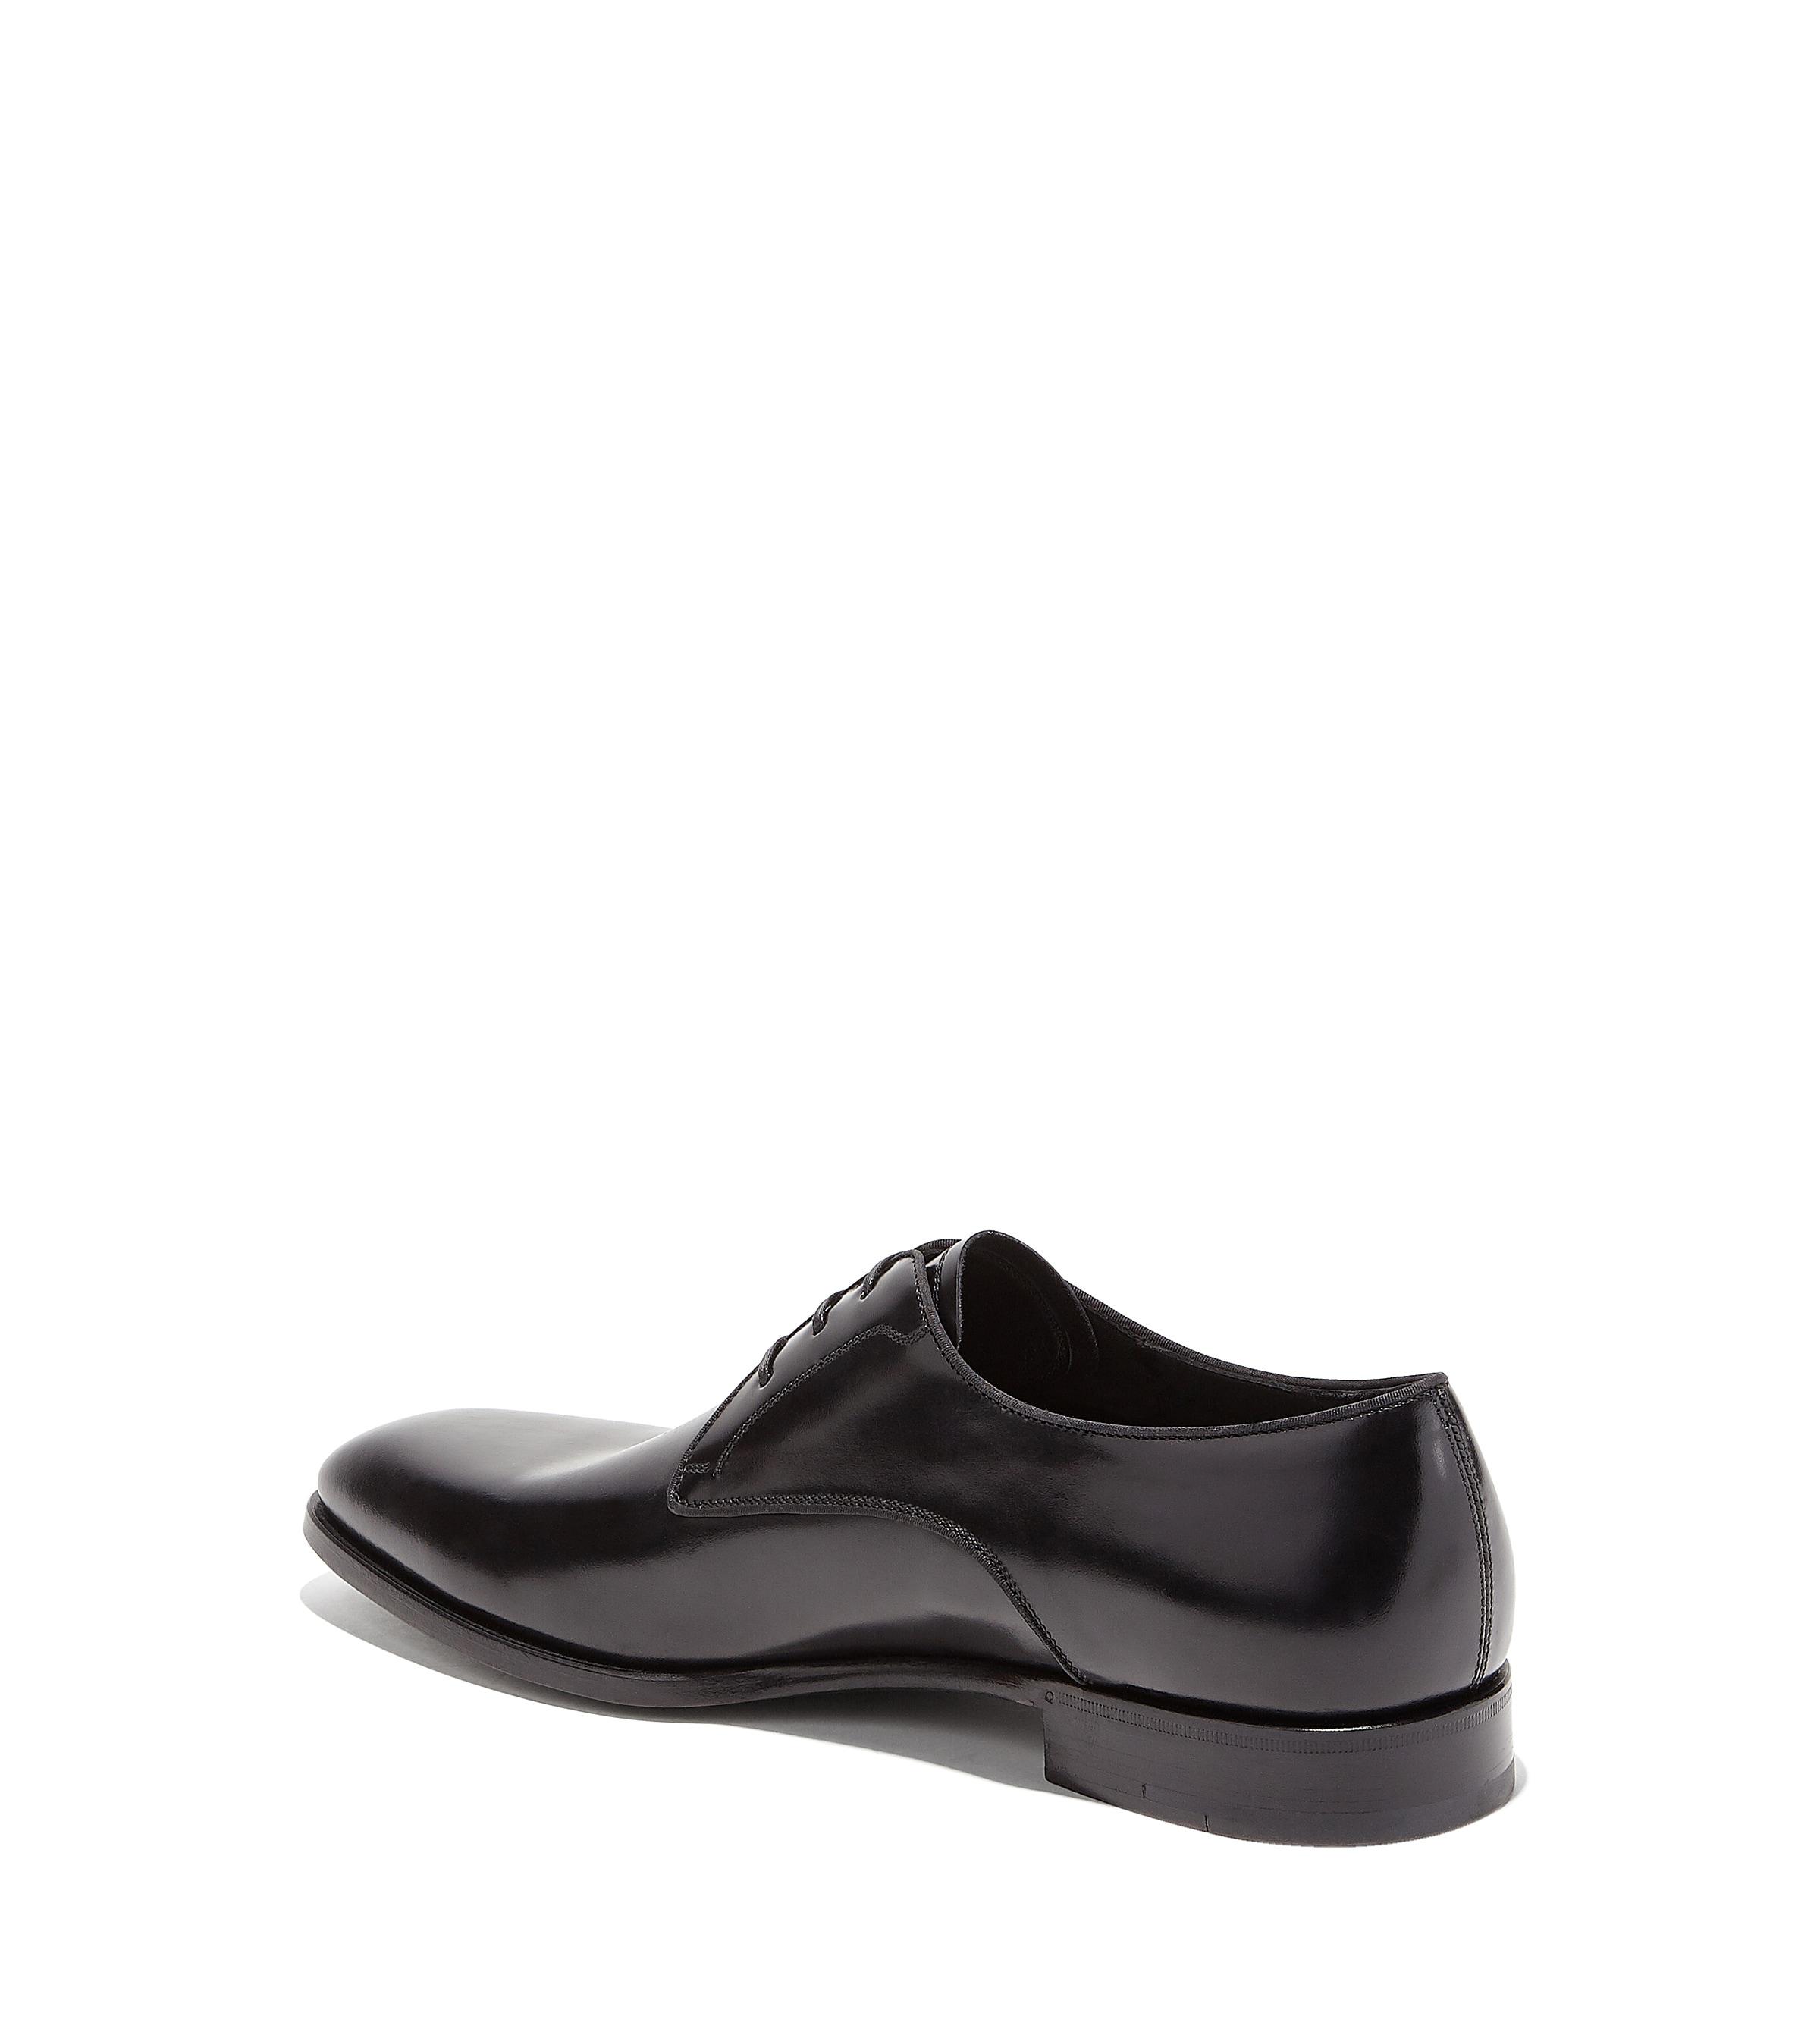 Ferragamo Leather Derby Shoe in Black for Men - Lyst